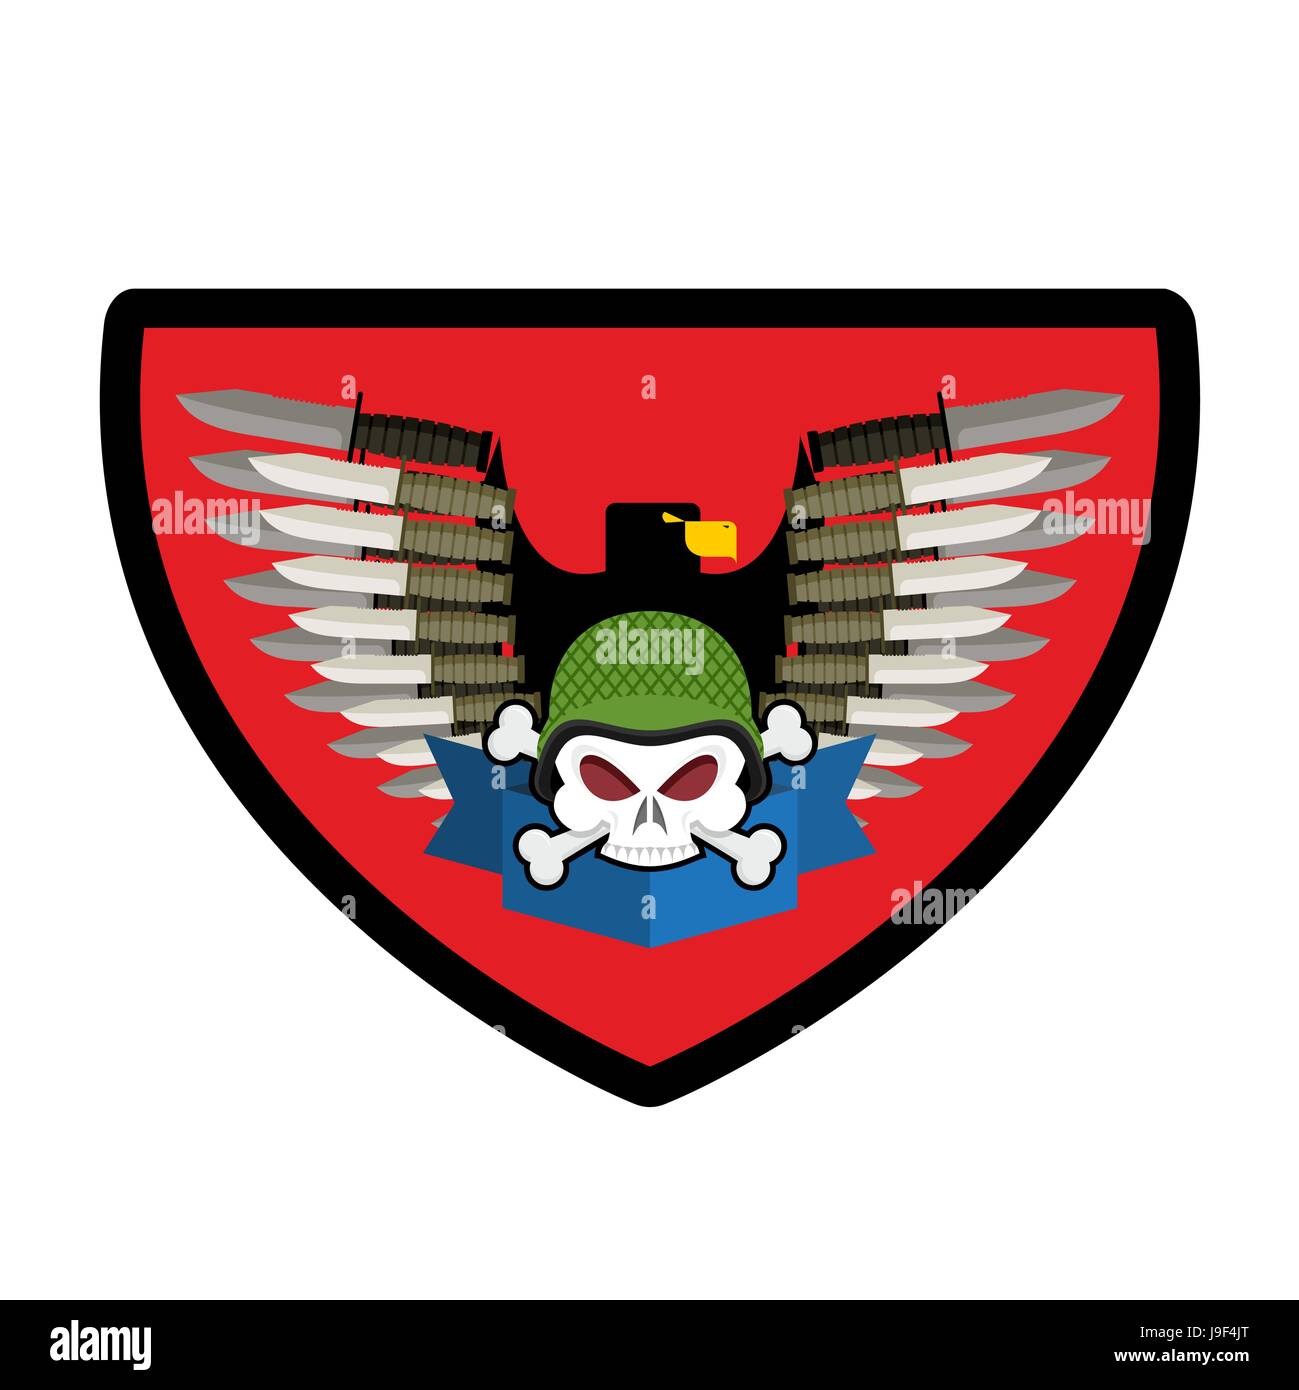 Armee-Logo Schädel. Soldaten-Abzeichen. Militärische Emblem. Flügel und Waffen. Adler und Waffen. Wunderbare Zeichen für Truppen. Wappen-Kommando Stock Vektor